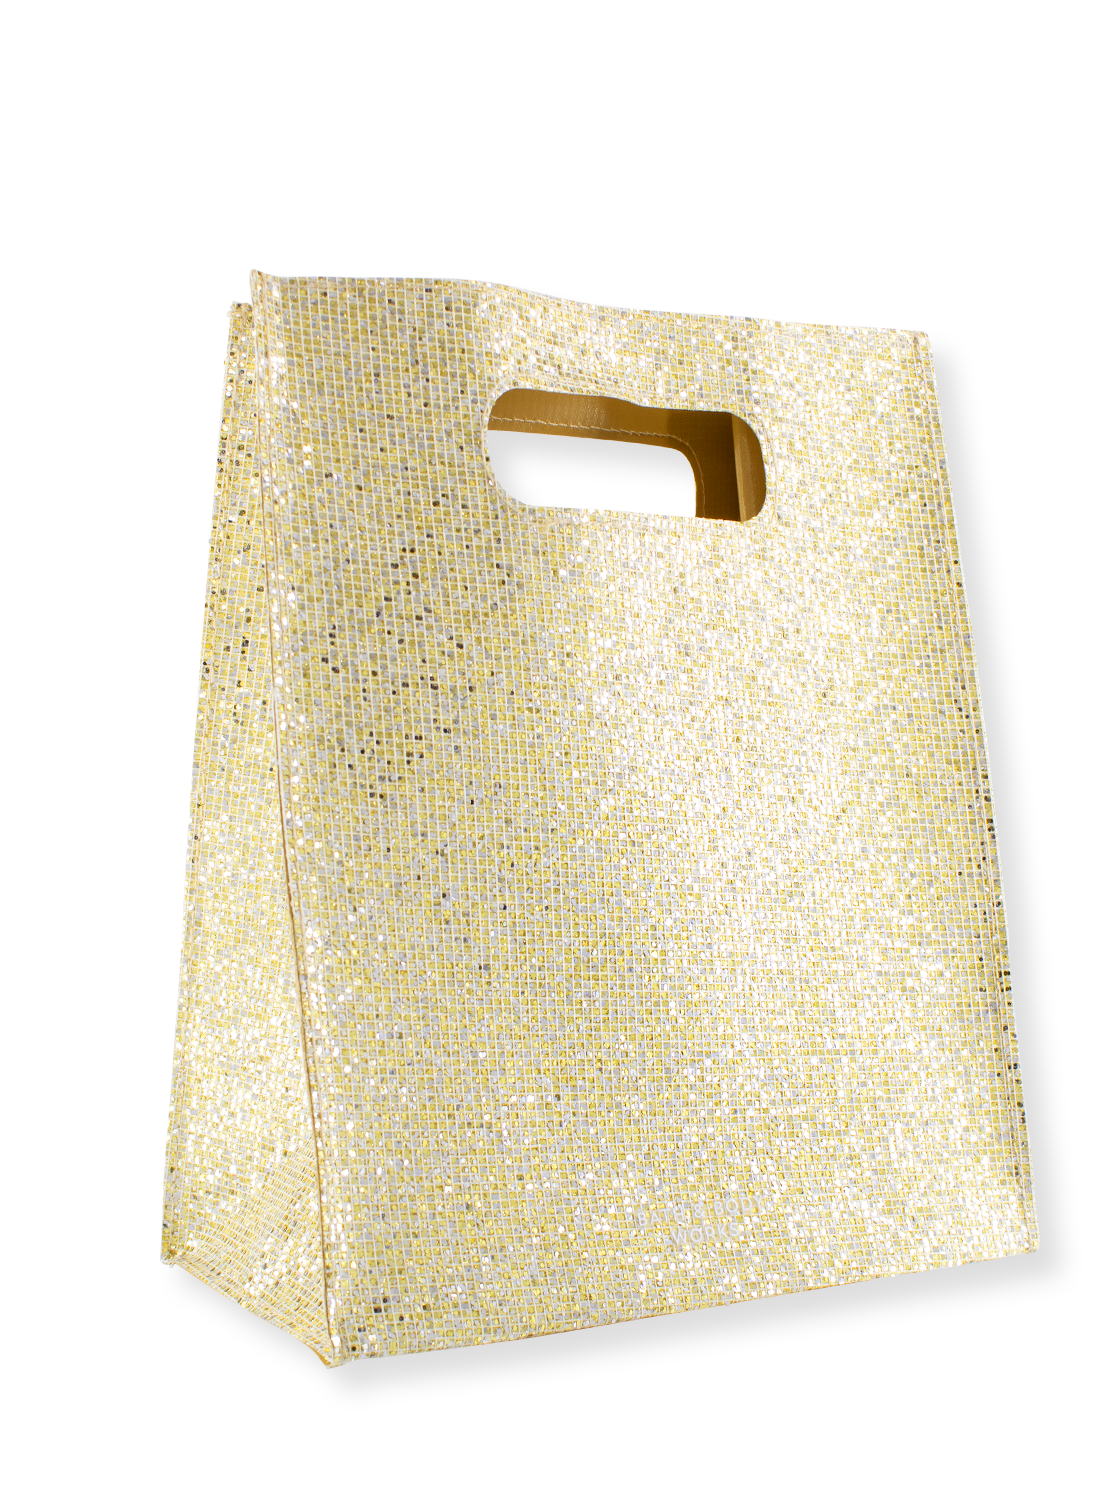 Gift Bag - Gold Glitter